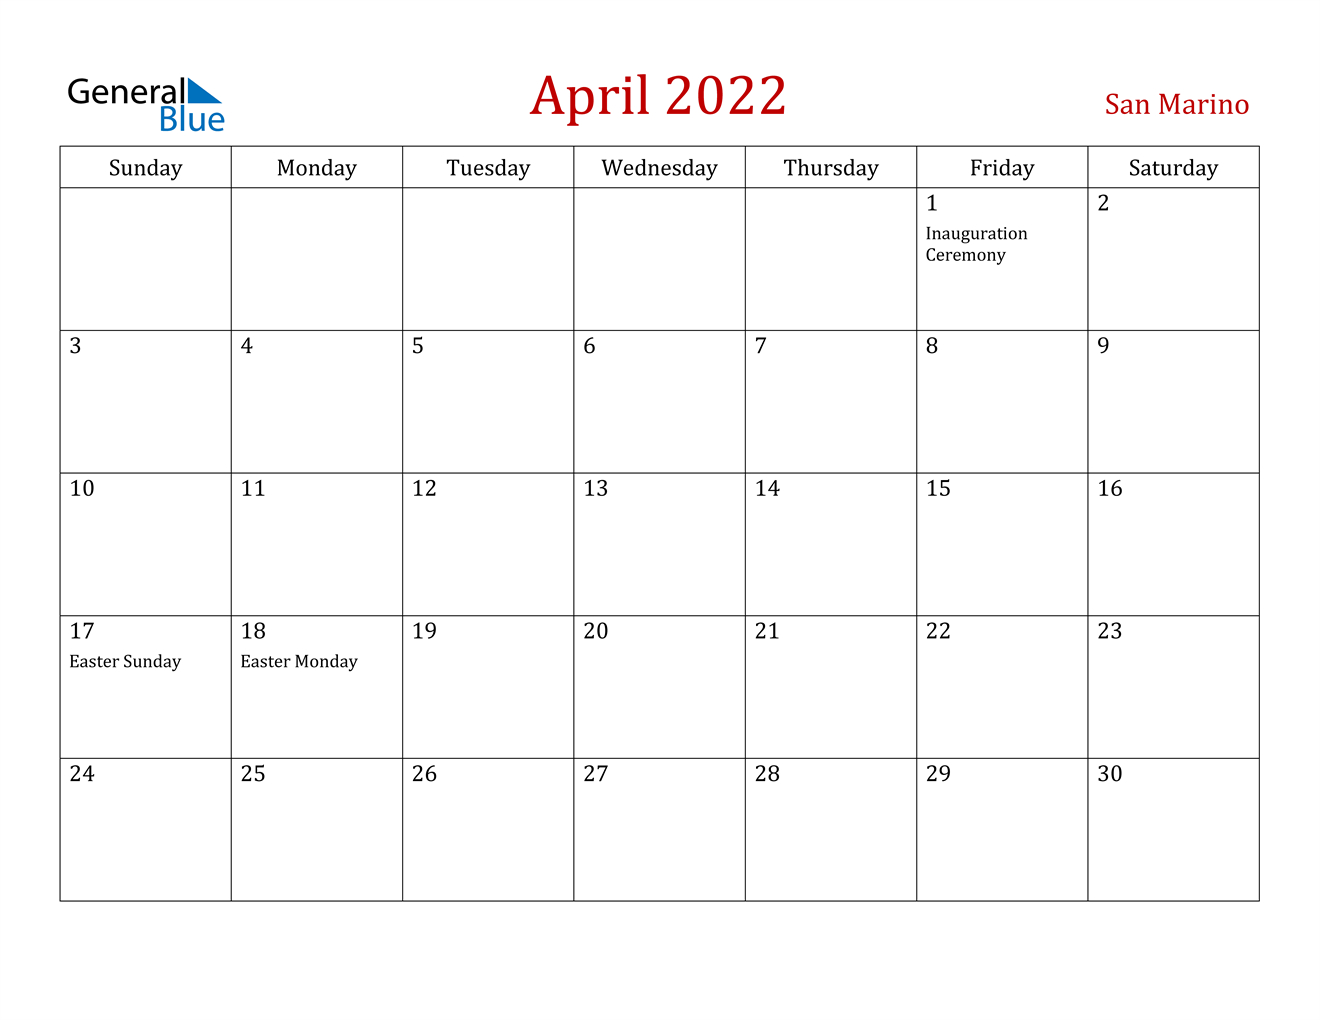 April 2022 Calendar - San Marino